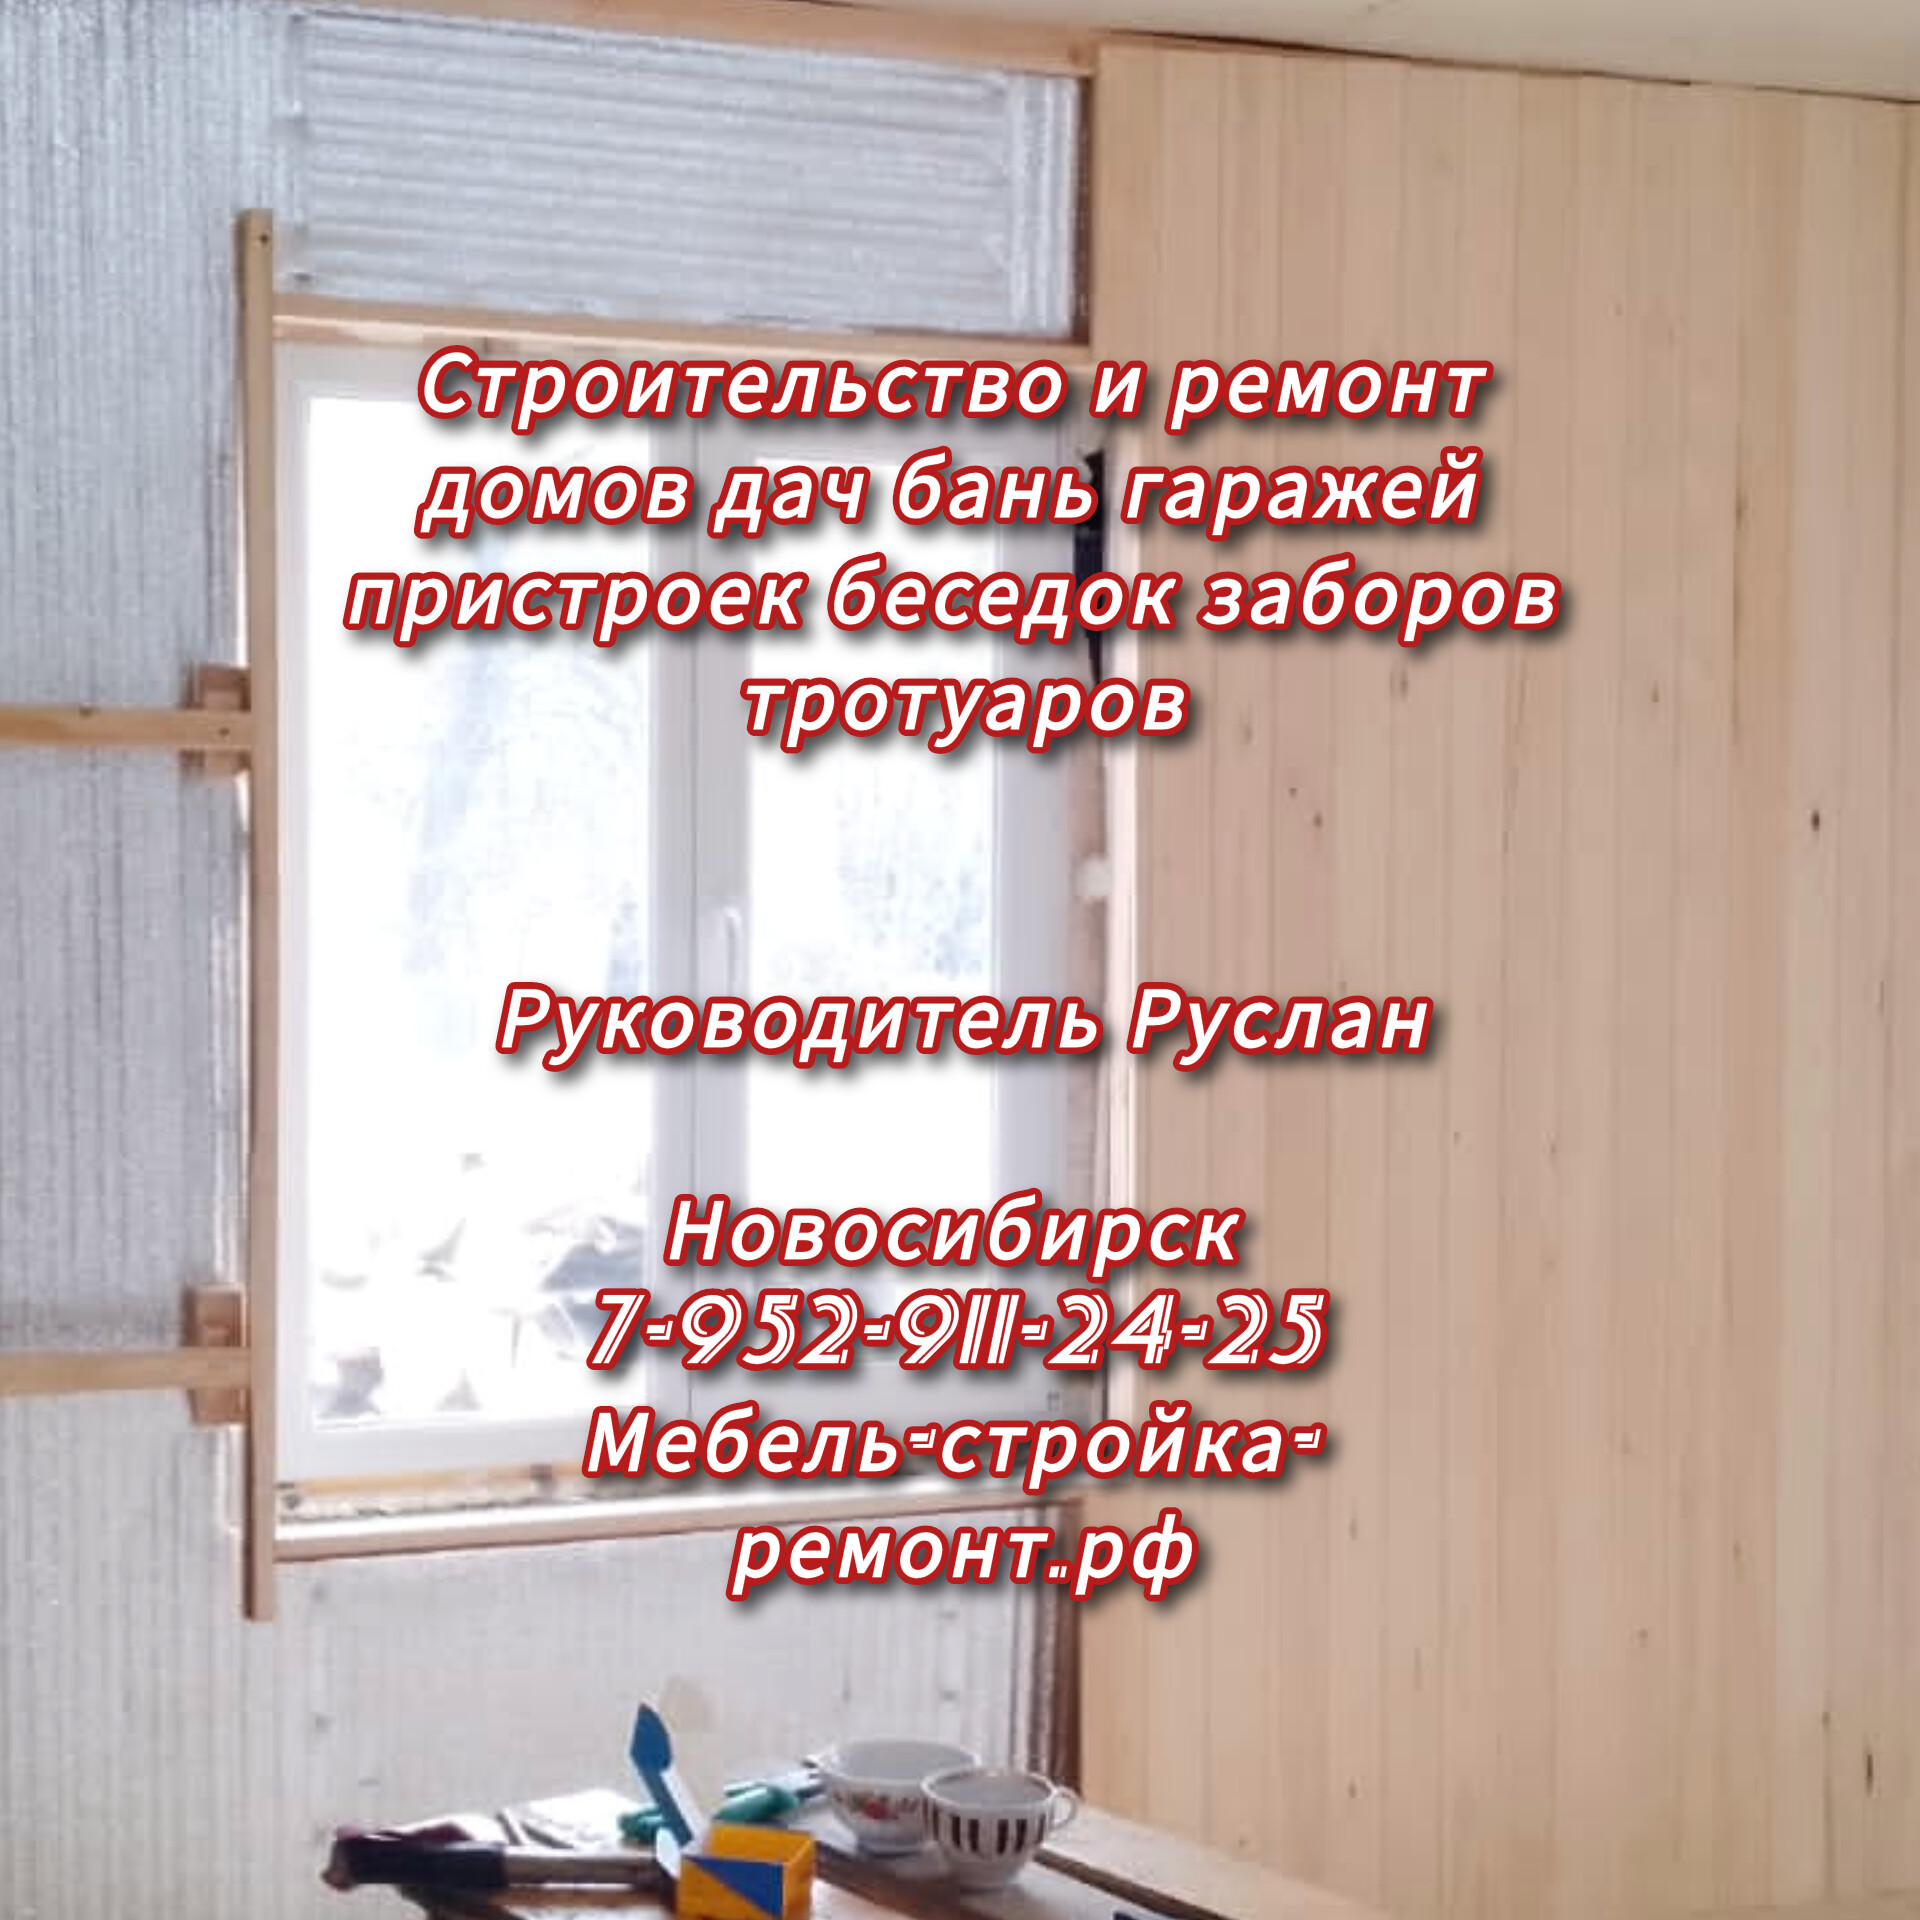 строительство и ремонт домов дач бань гаражей кровли пристроек беседок заборов ворот в Новосибирске